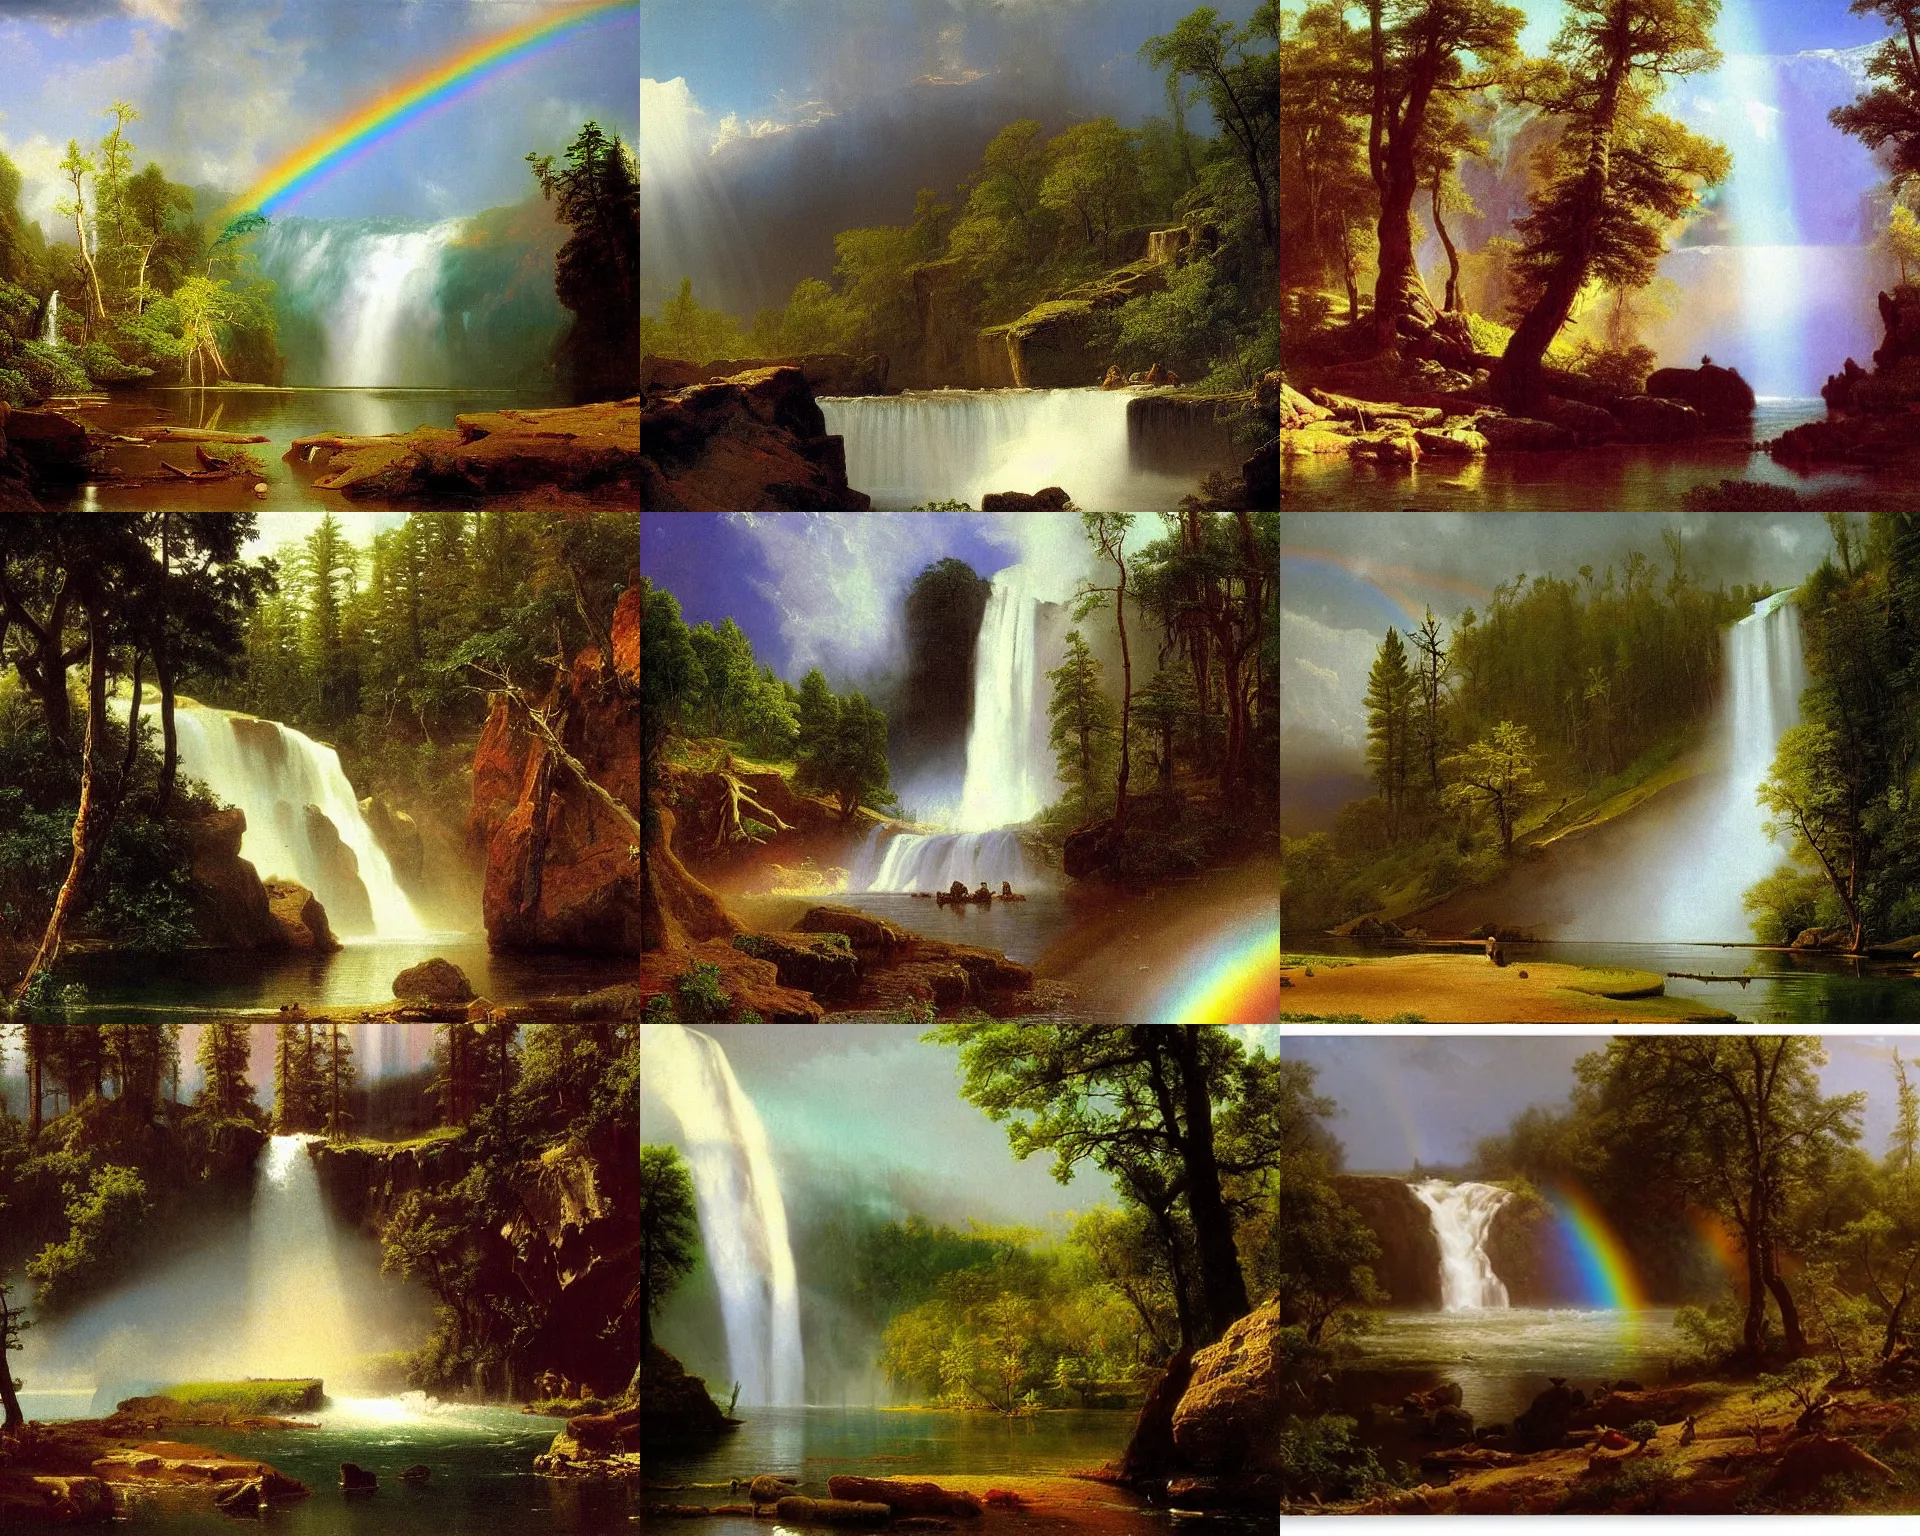 Prompt: waterfalls, wilderness, open sky, rainbow, painting by albert bierstadt